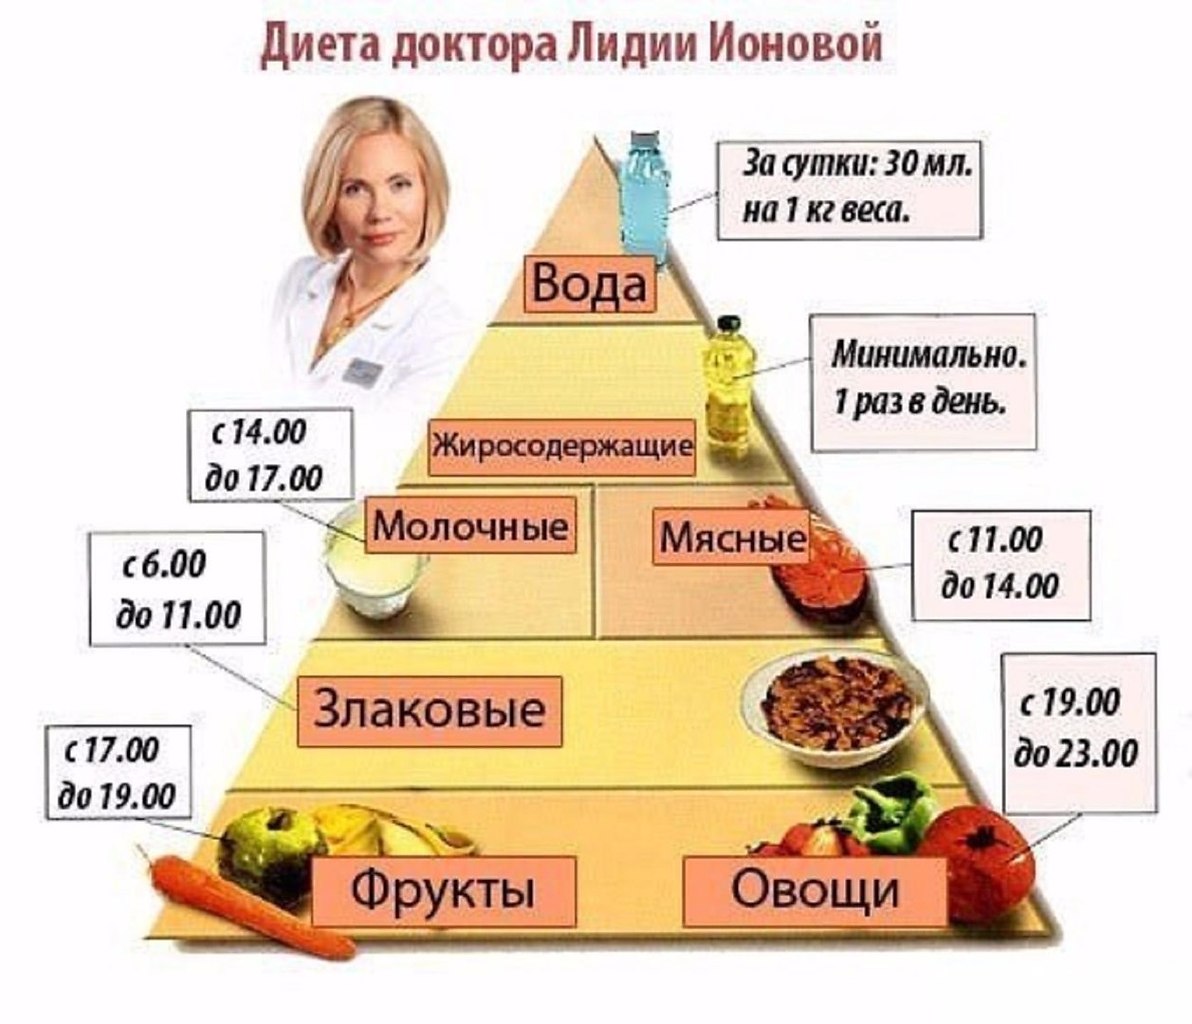 Пирамида питания Лидии Ионовой